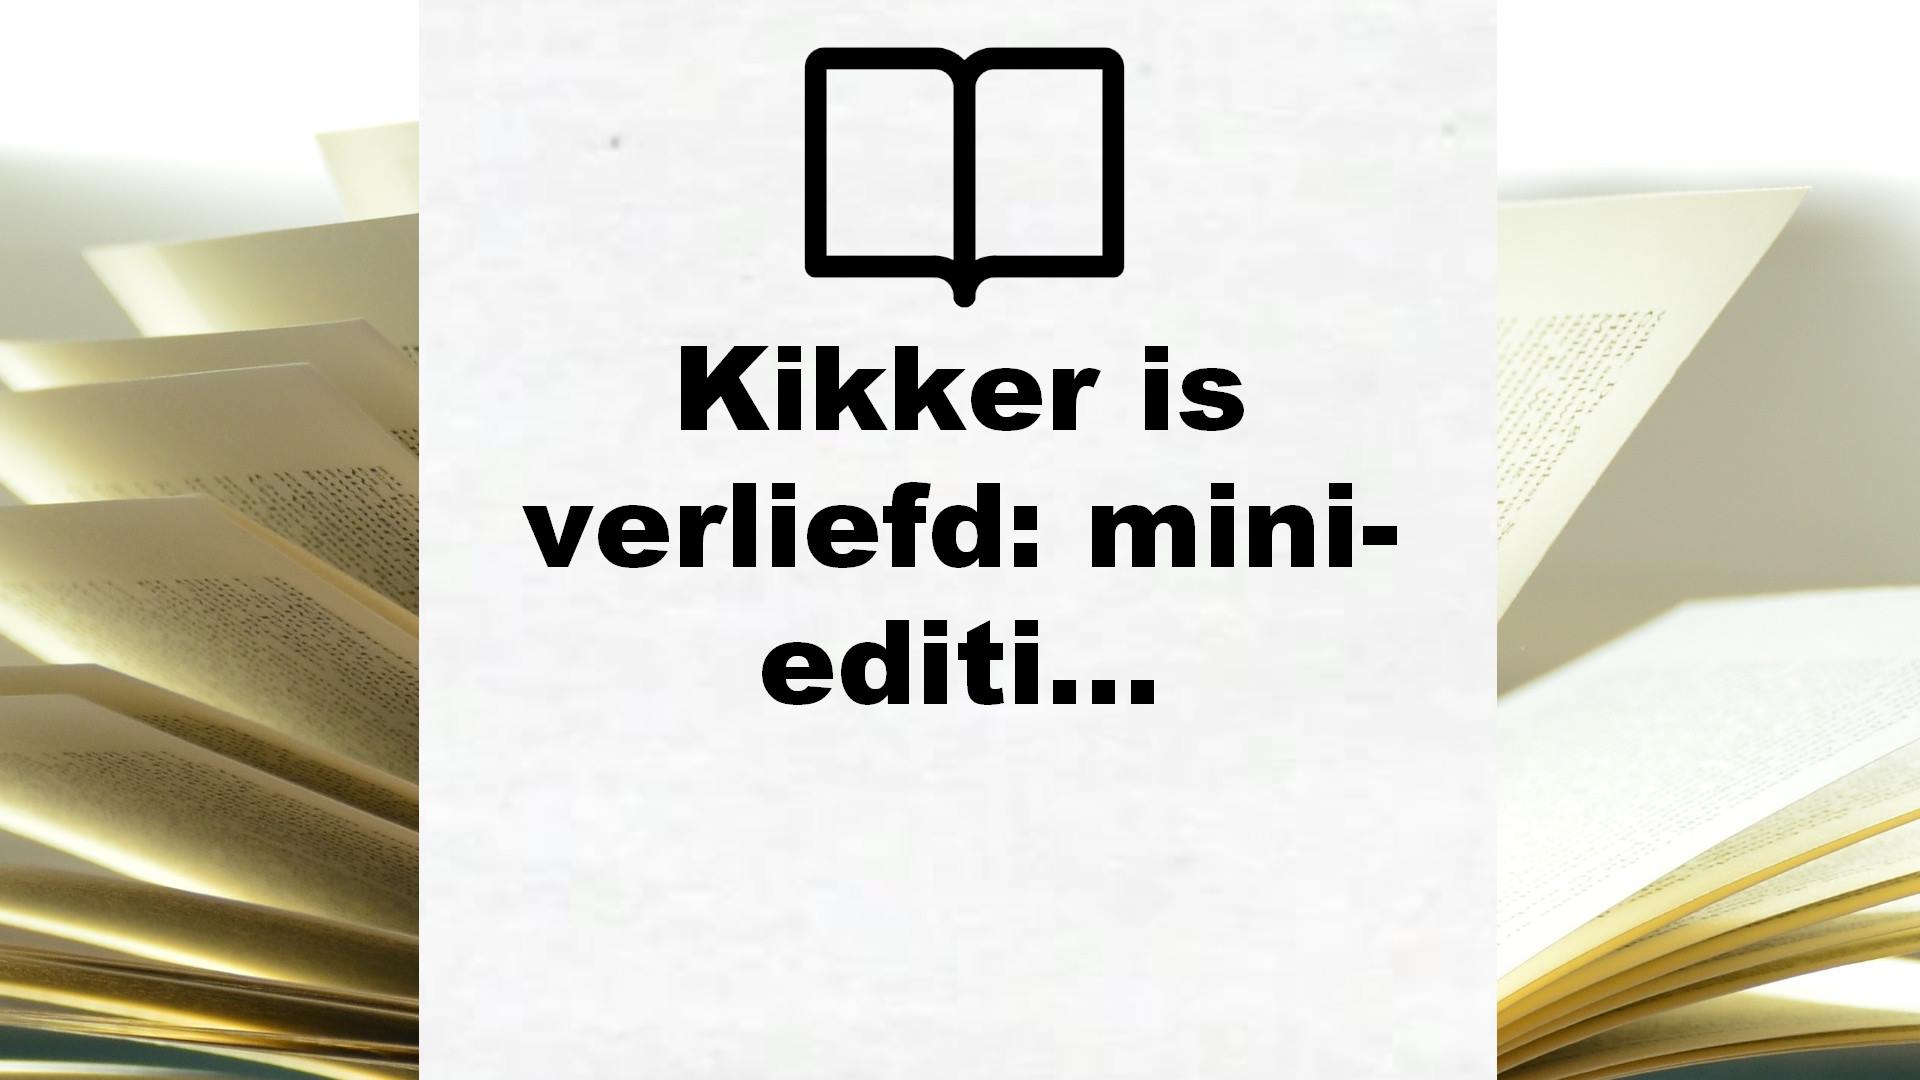 Kikker is verliefd: mini-editie – Boekrecensie